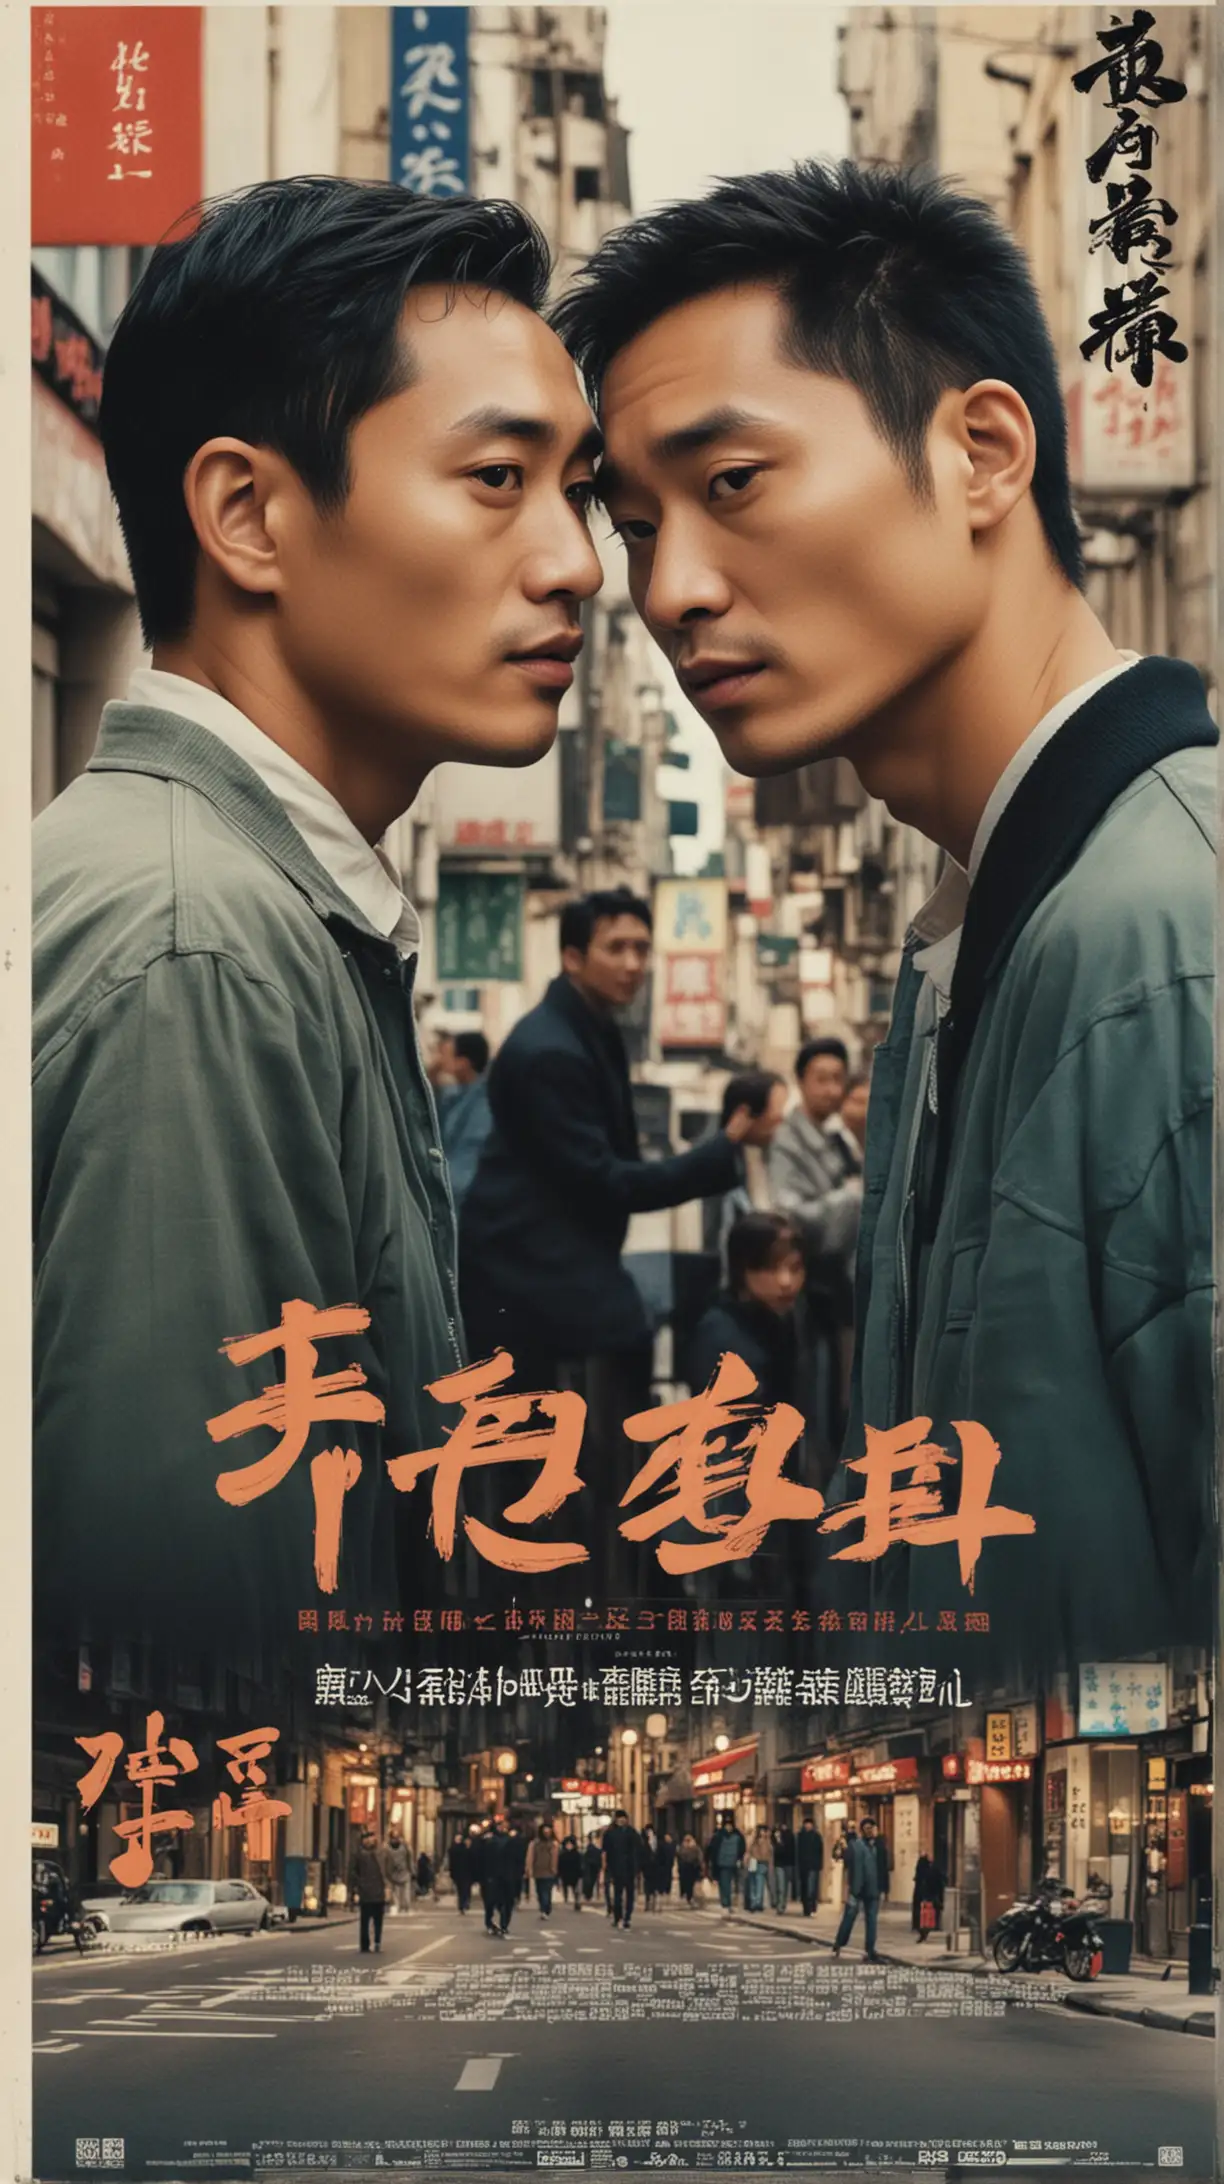 这是一个具有现代感电影风格的海报，爱情故事，故事发生在欧洲街头，主角是两名中国男人久别重逢, 其中一名有着张国荣的气质。